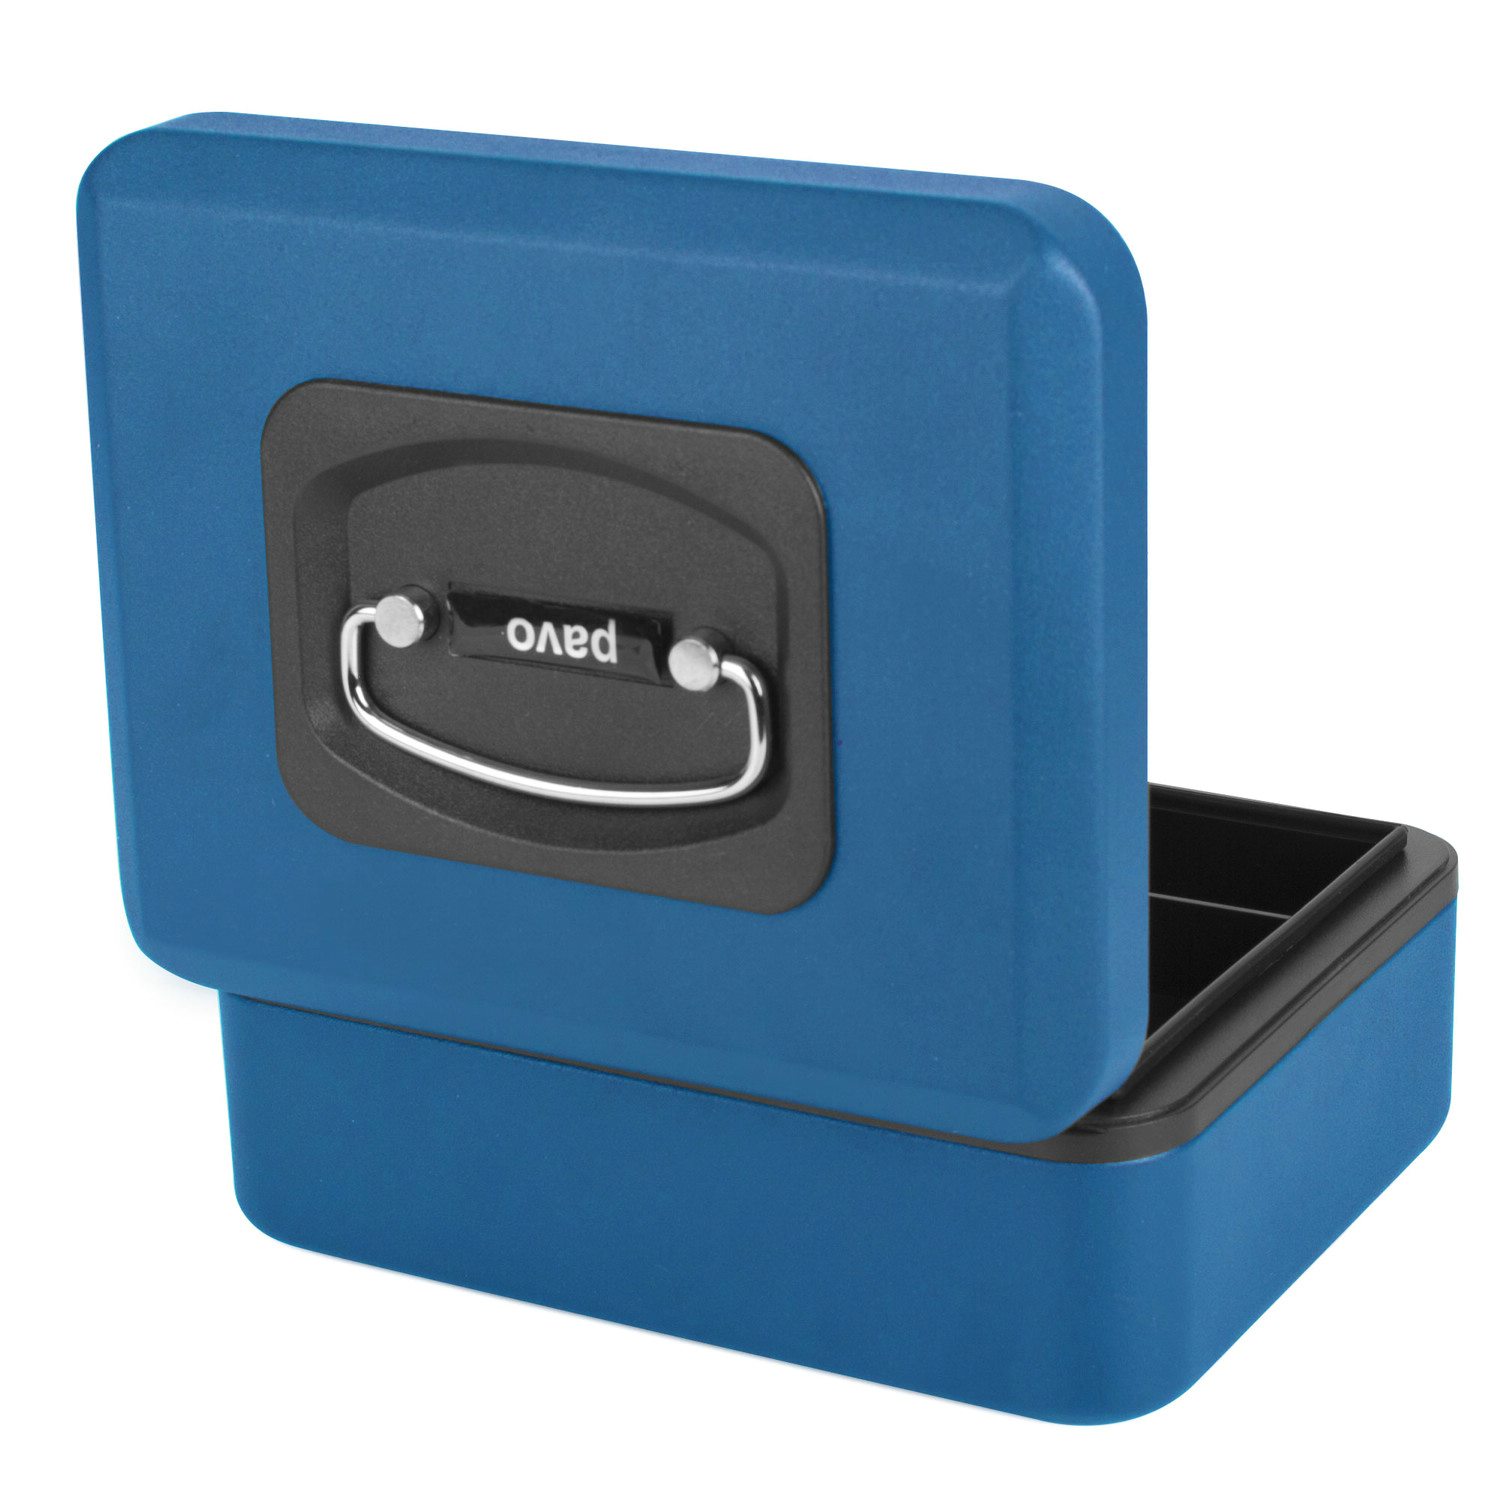 Deluxe Geldkassette mit praktischer ffnungsfunktion 200mm, blau